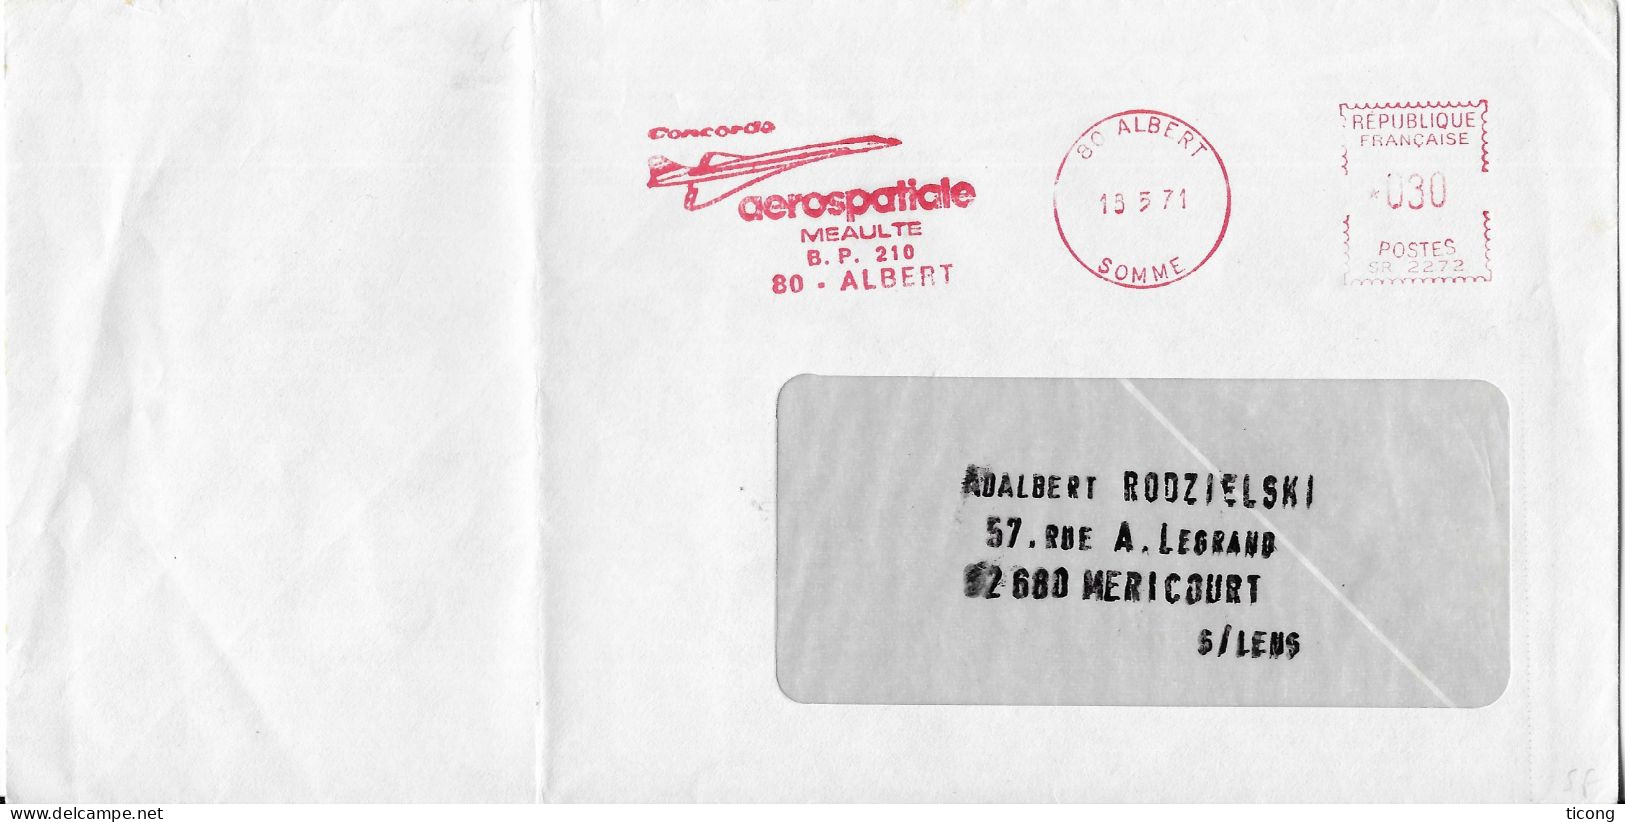 EMA ILLUSTREE 1971 - CONCORDE AEROSPATIALE MEAULTE A ALBERT SOMME, VOIR LES SCANNERS - Concorde